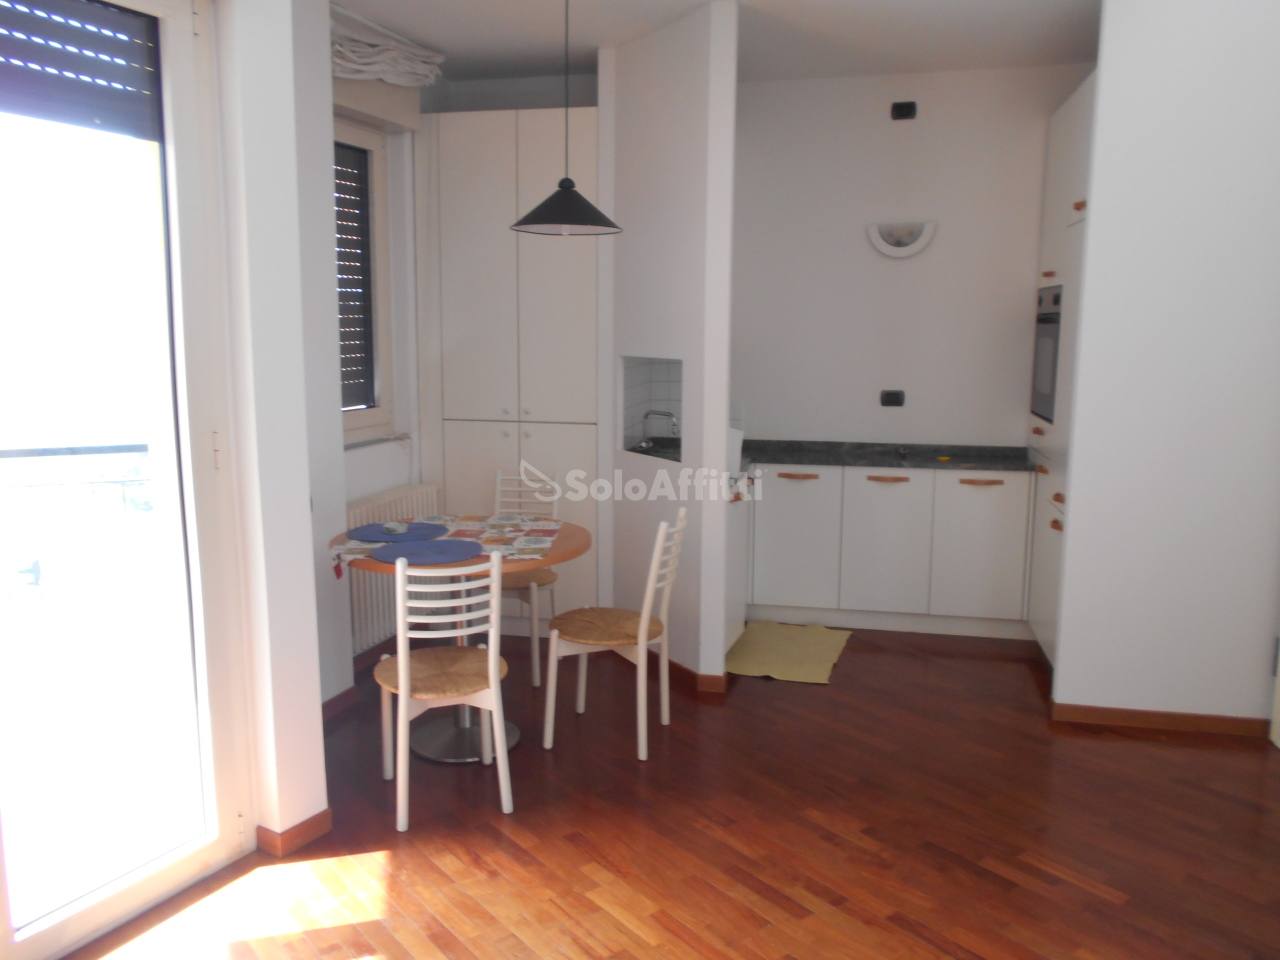 Appartamento in affitto a Cantù, 1 locali, prezzo € 450 | PortaleAgenzieImmobiliari.it